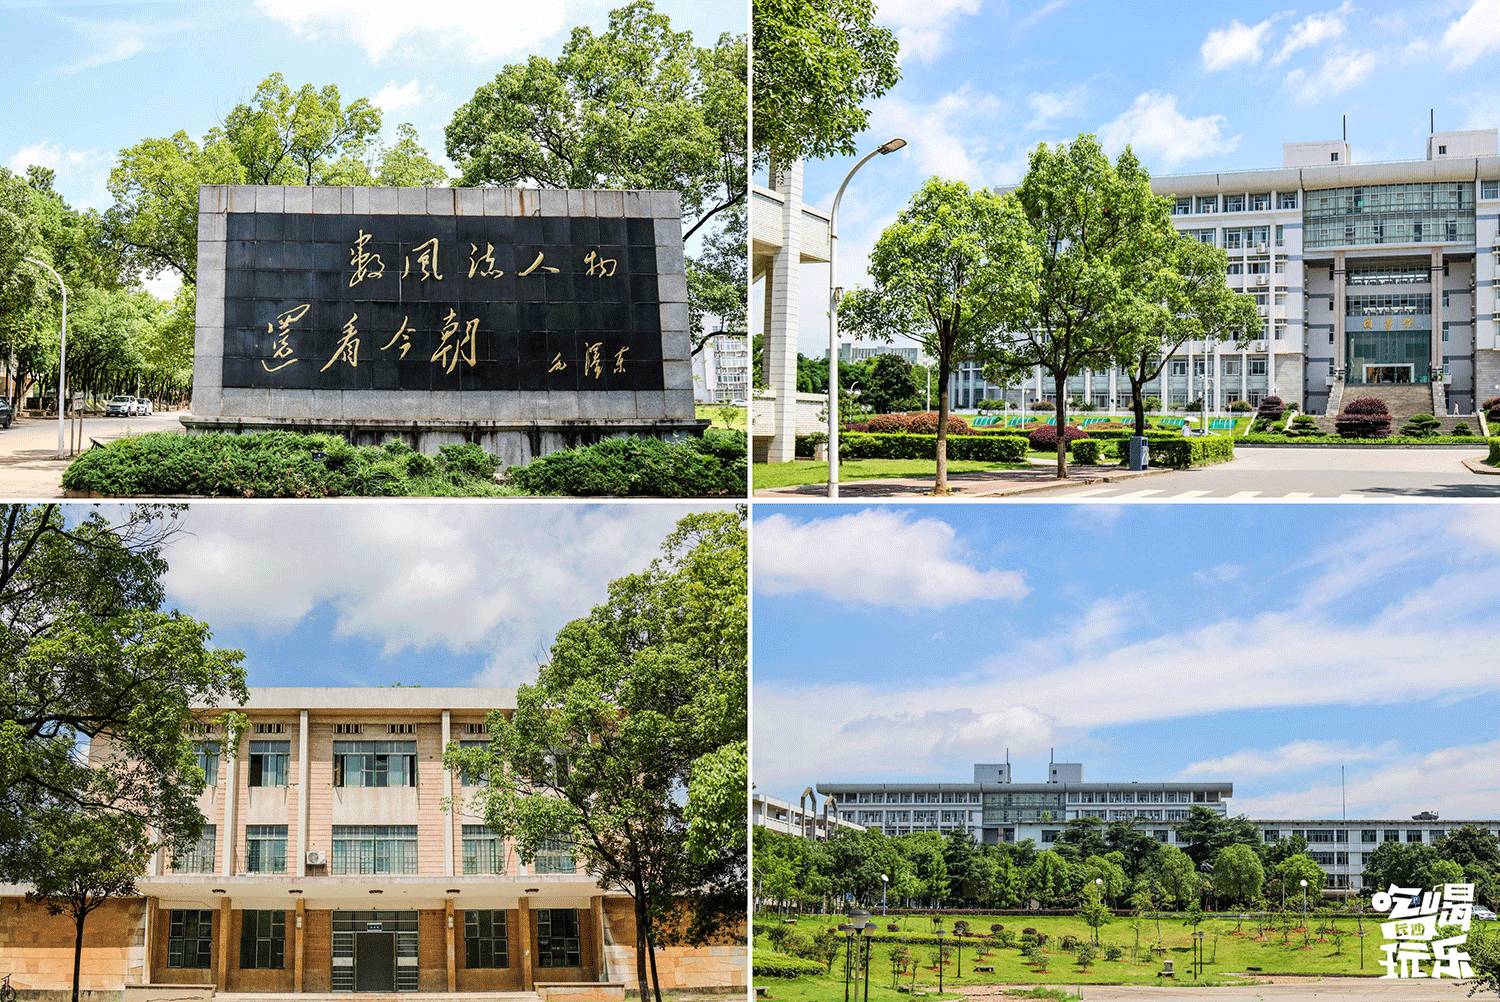 湘潭大学,简称"湘大,这所由毛嗲嗲提议创办并题写校名的大学,是湖南